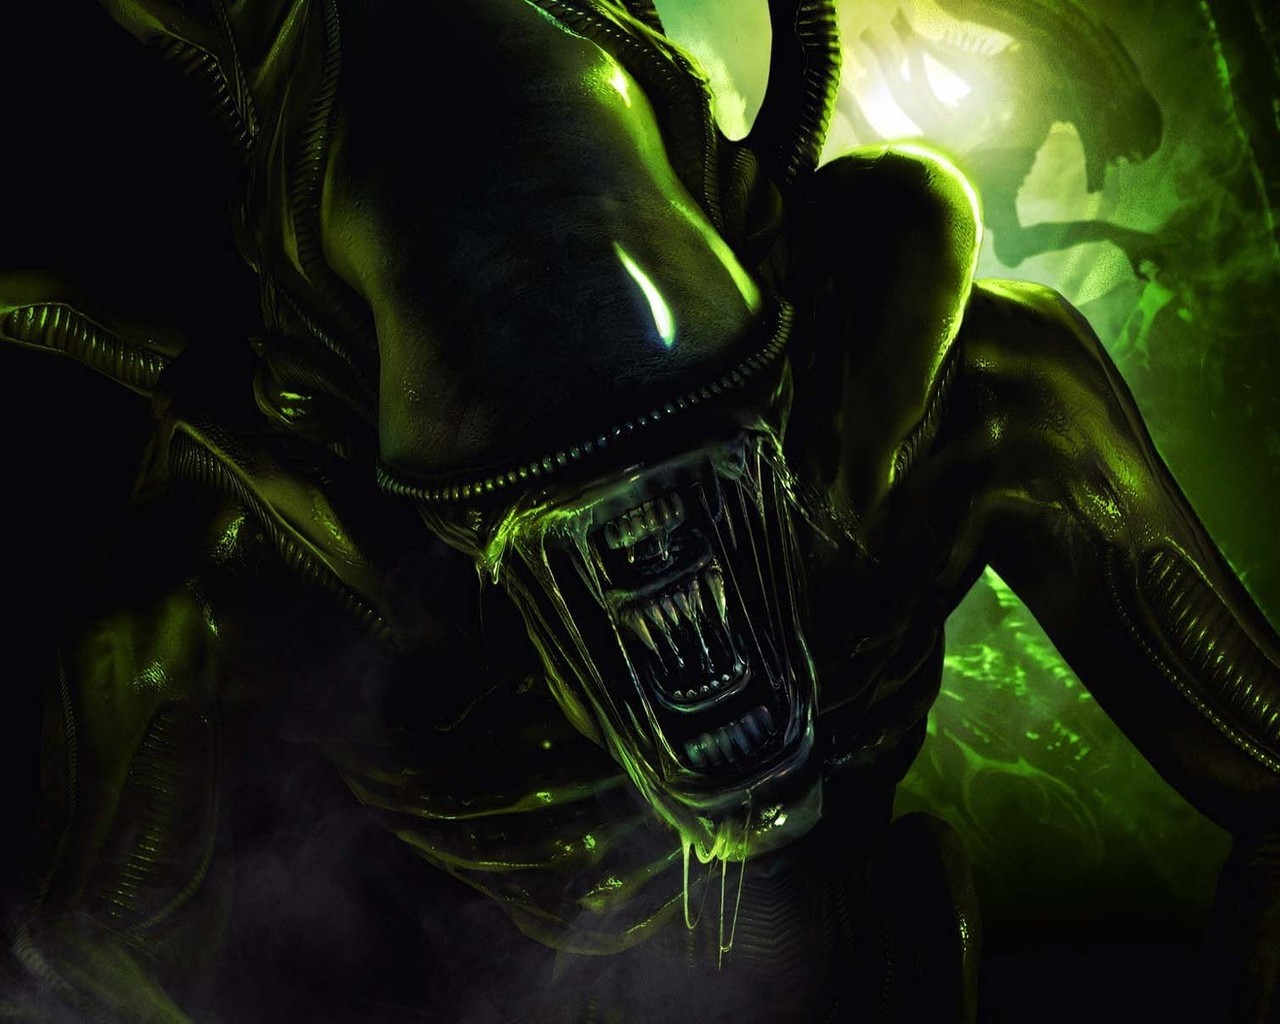 download alien versus predator